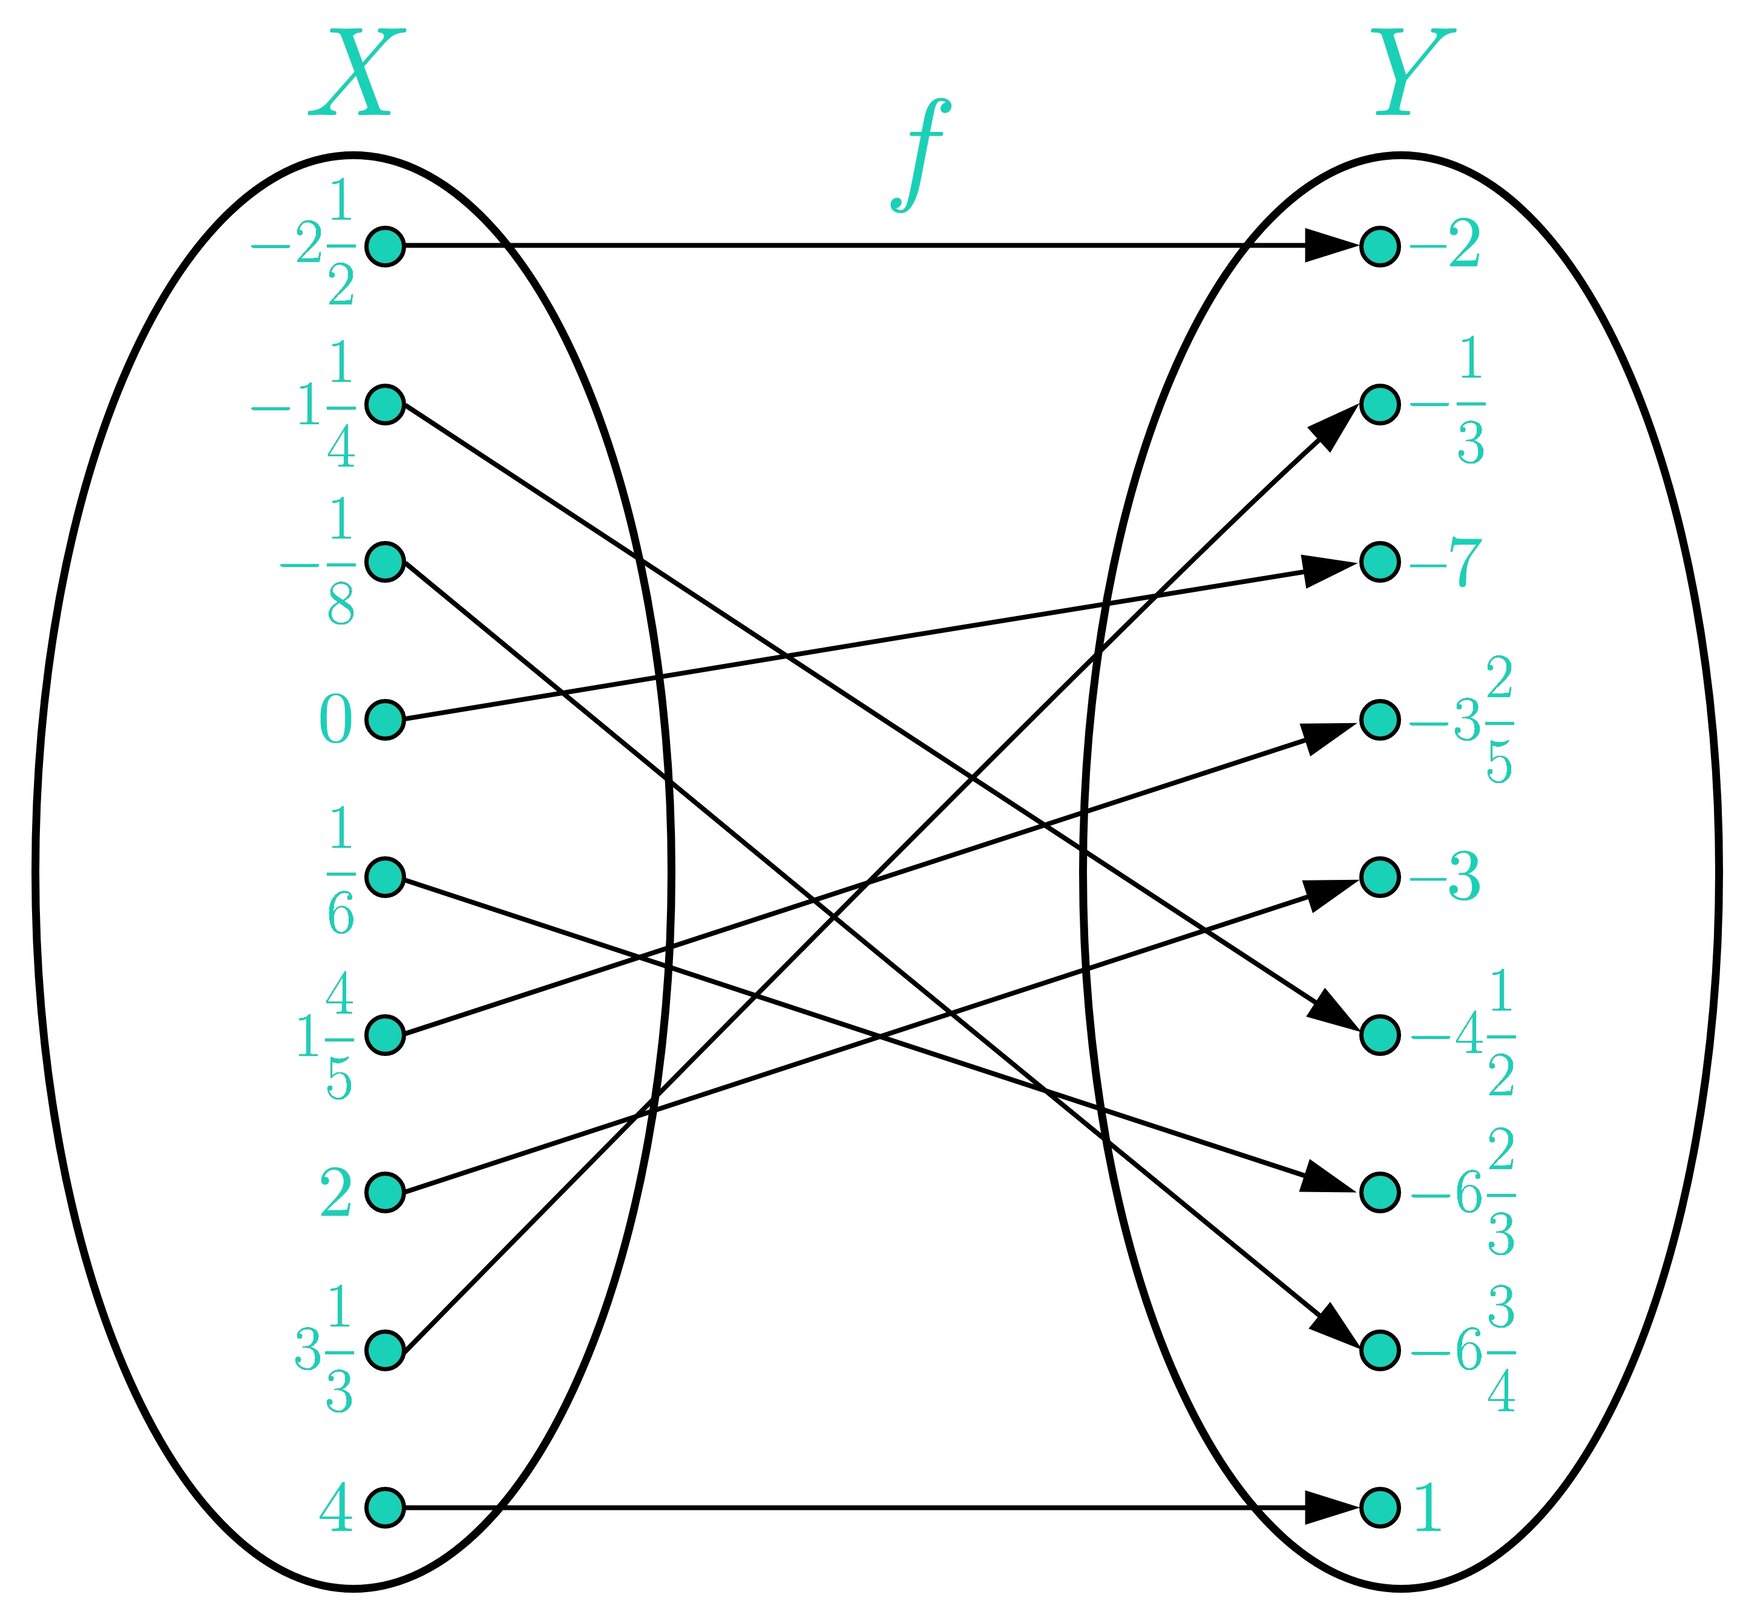 Ilustracja przedstawia graf opisujący funkcję f. Graf składa się z dwóch pionowo ustawionych równych elips, przy czym każda z nich  reprezentuje jeden ze zbiorów - lewa zbiór X, a prawa zbiór Y. W każdym zbiorze umieszczone są elementy. Elementy ze zbioru X mają przyporządkowane elementy ze zbioru Y za pomocą strzałek przebiegających od danego elementu z X do przyporządkowanemu mu elementu z Y. Pary utworzone przez funkcję są uporządkowane i są następujące: -212;-2, -114;-412, -18;-634, 0;-7, 16;-623, 145;-325, 2;-3, 313;-13, 4;1. Wszystkie elementy z obu zbiorów mają dokładnie jedno przyporządkowanie i wszystkie są wykorzystane.